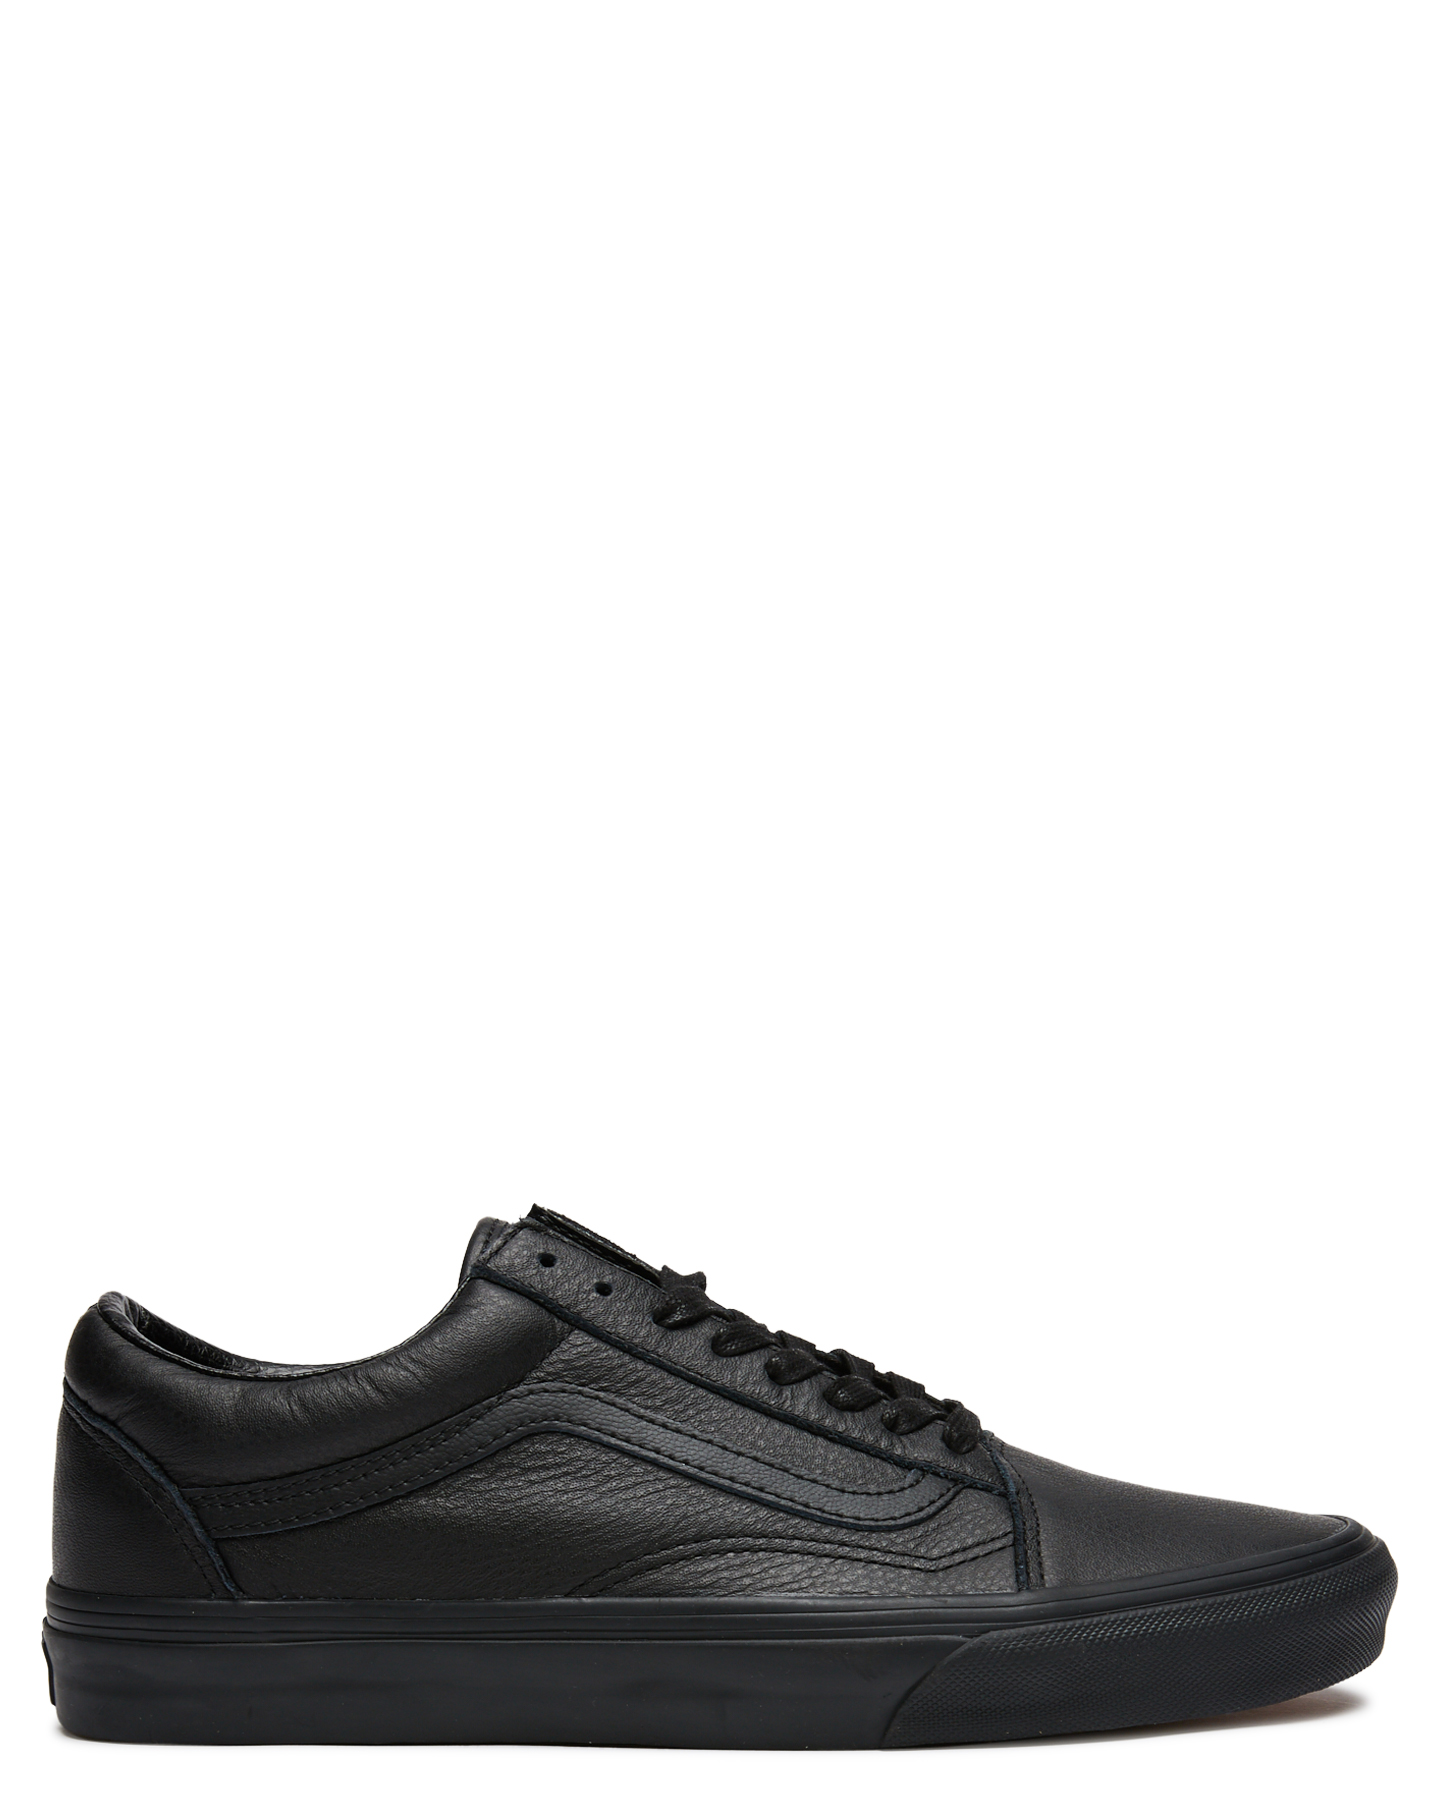 black leather vans school shoes